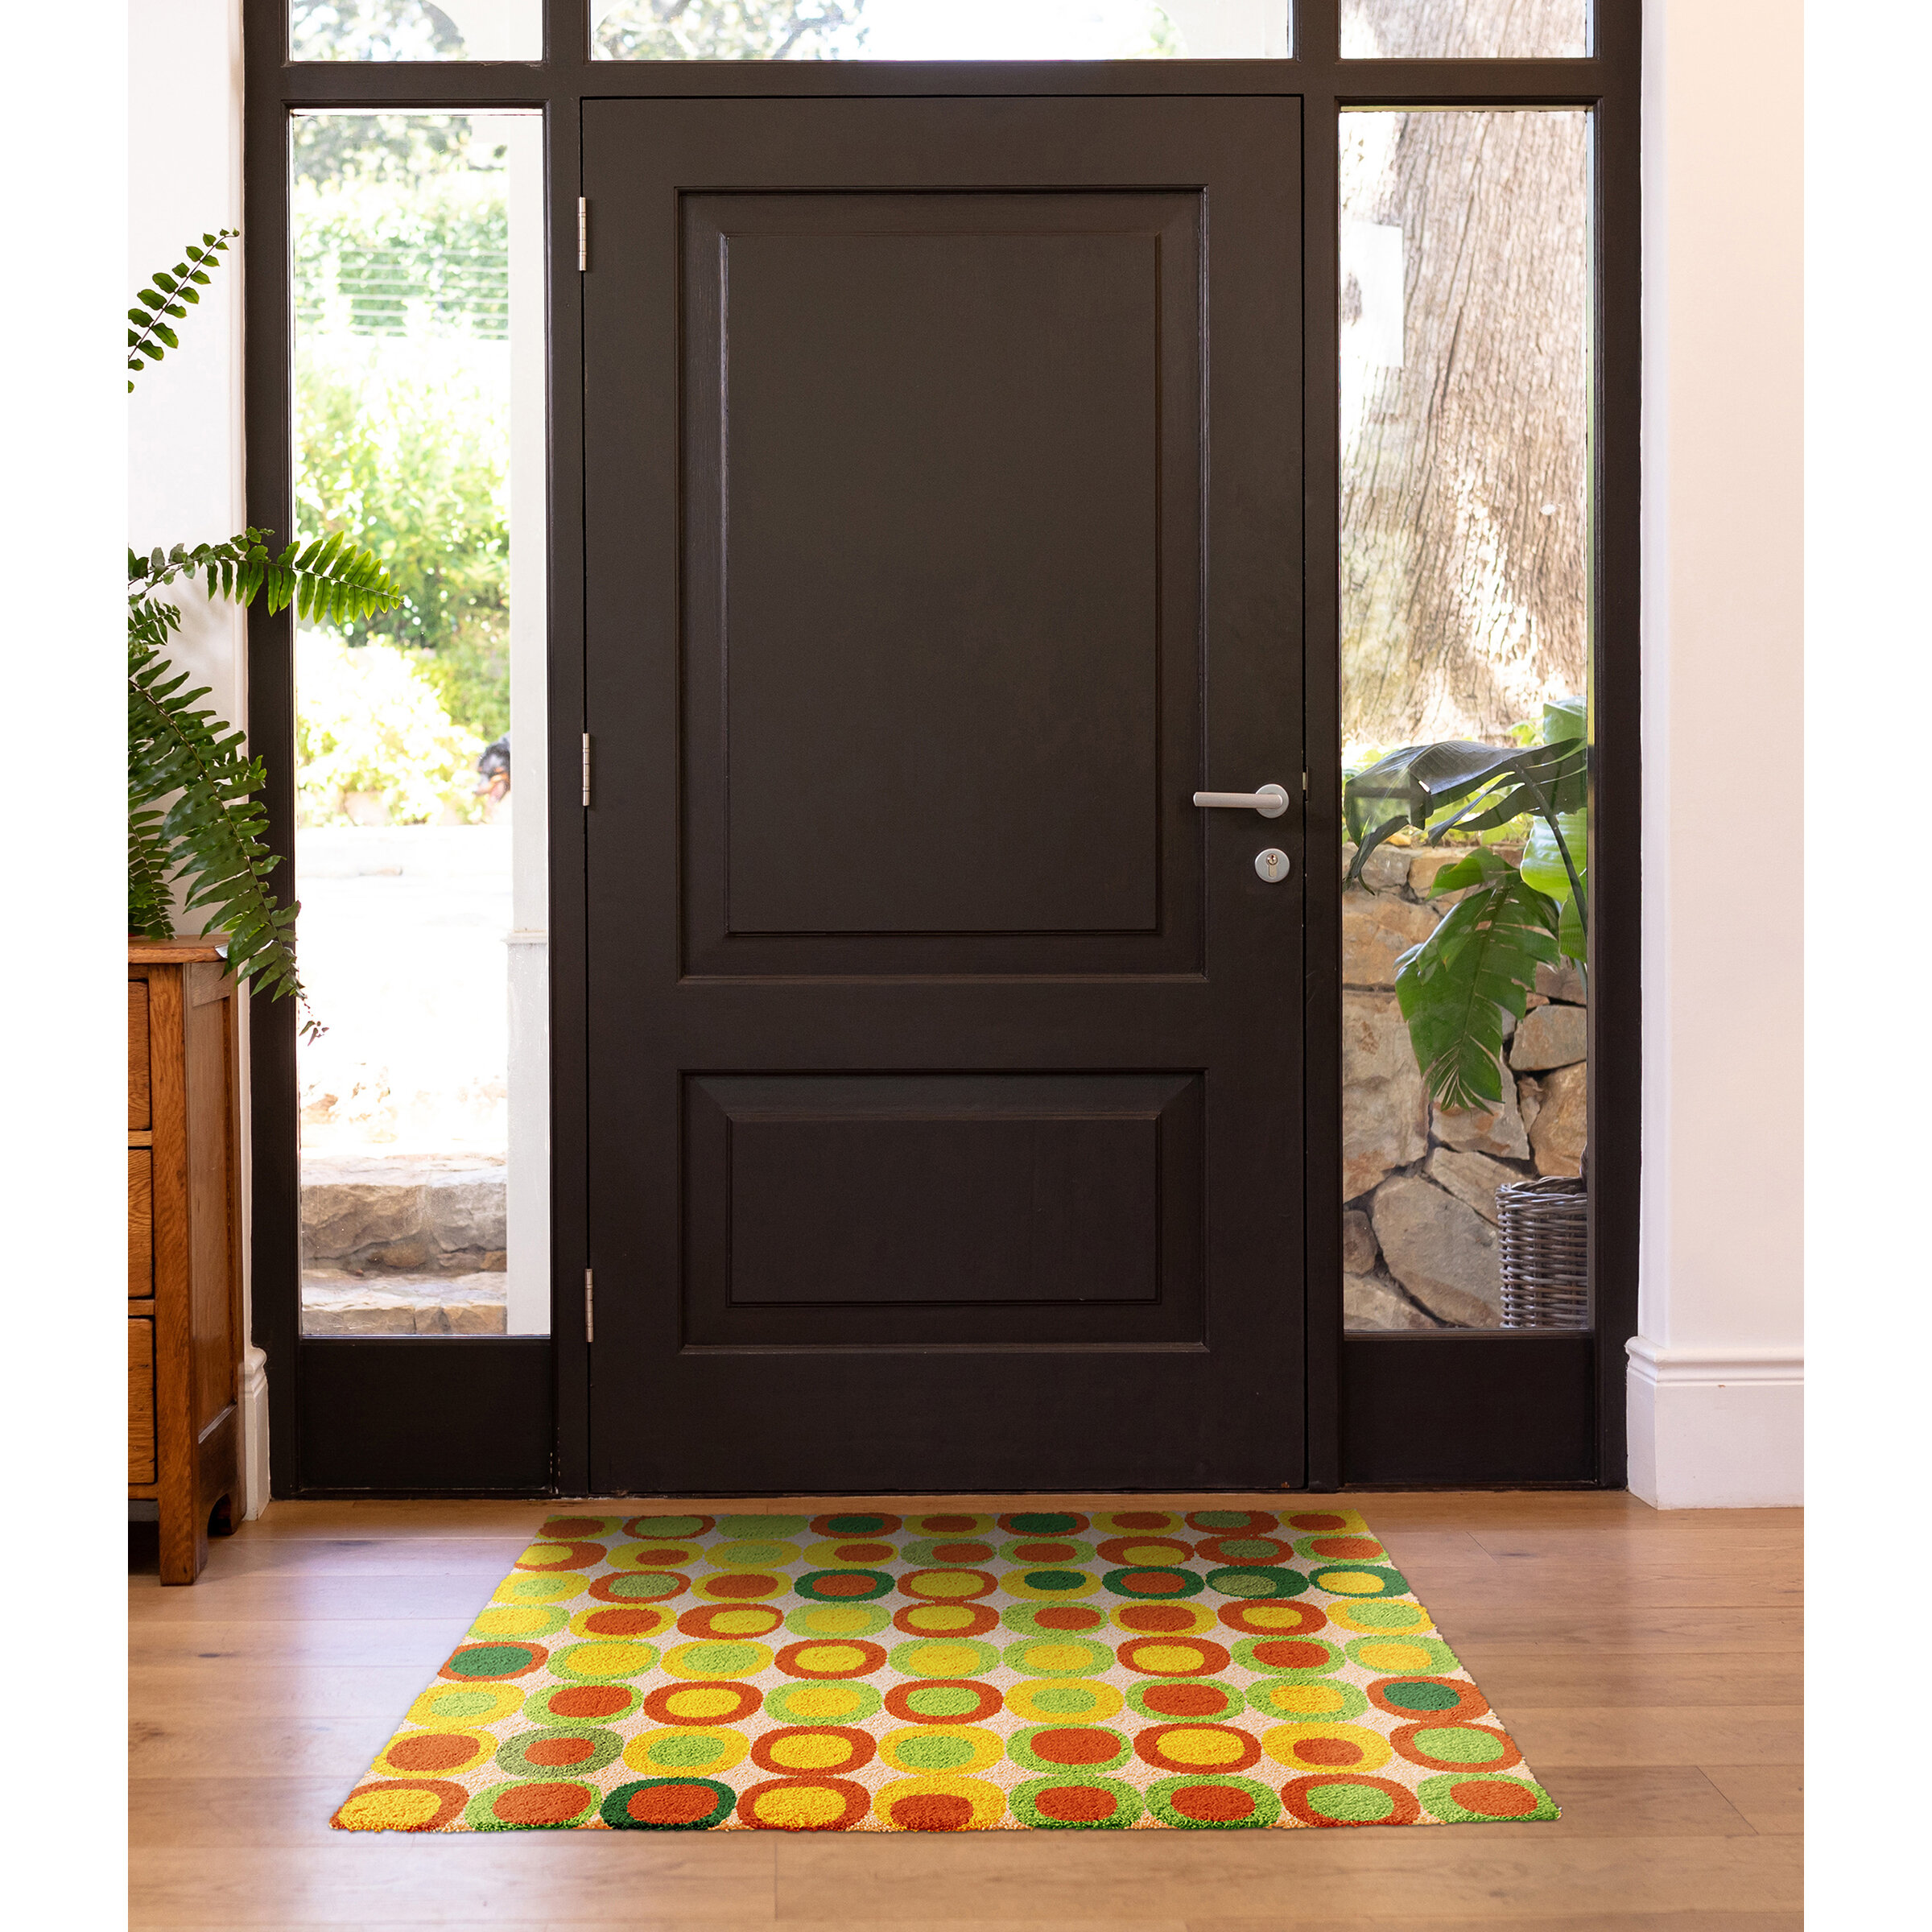 https://assets.wfcdn.com/im/70627636/compr-r85/1501/150129338/colorstar-spring-dots-22-in-x-34-in-machine-washable-indoor-door-mat.jpg